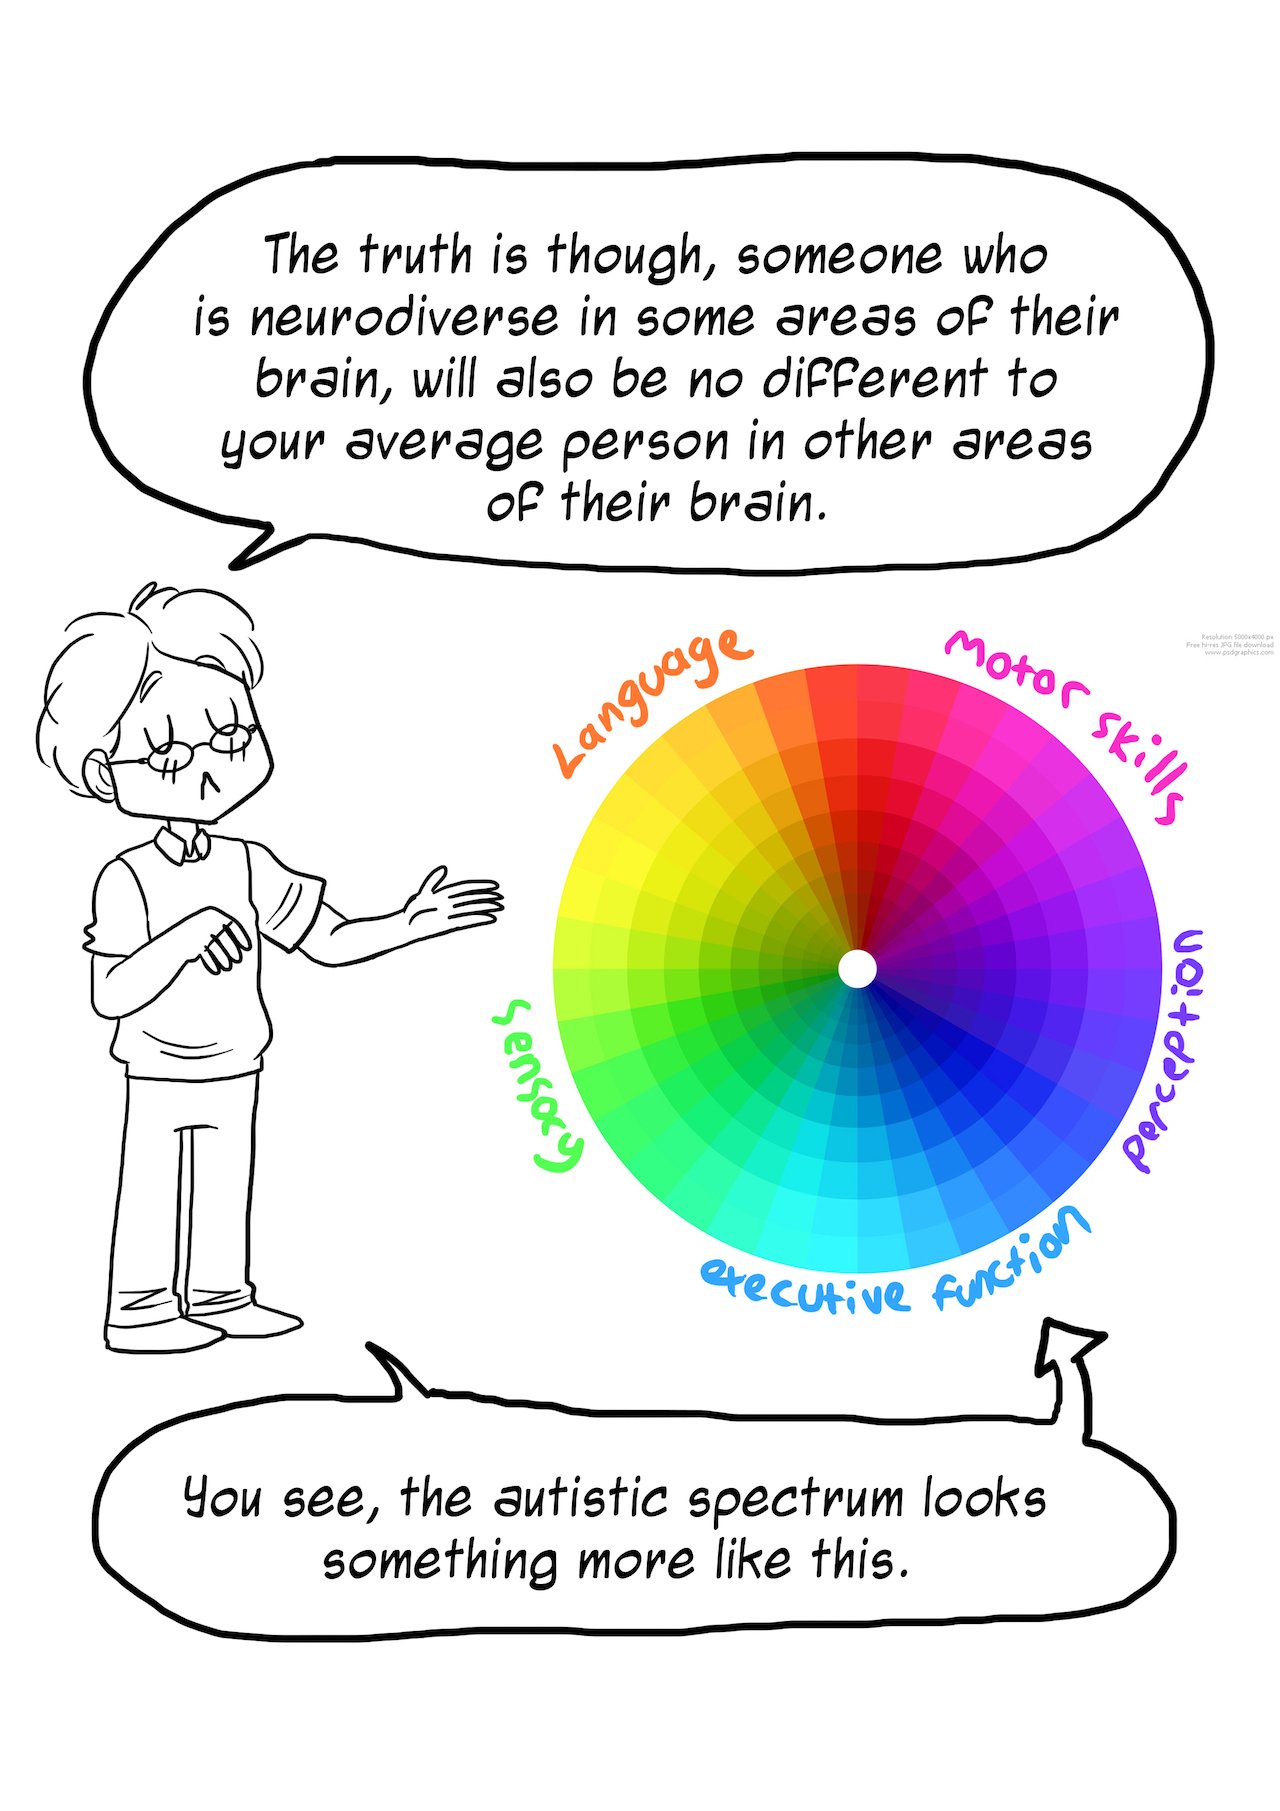 Rebecca Burgess Comic Redesigns the Autism Spectrum